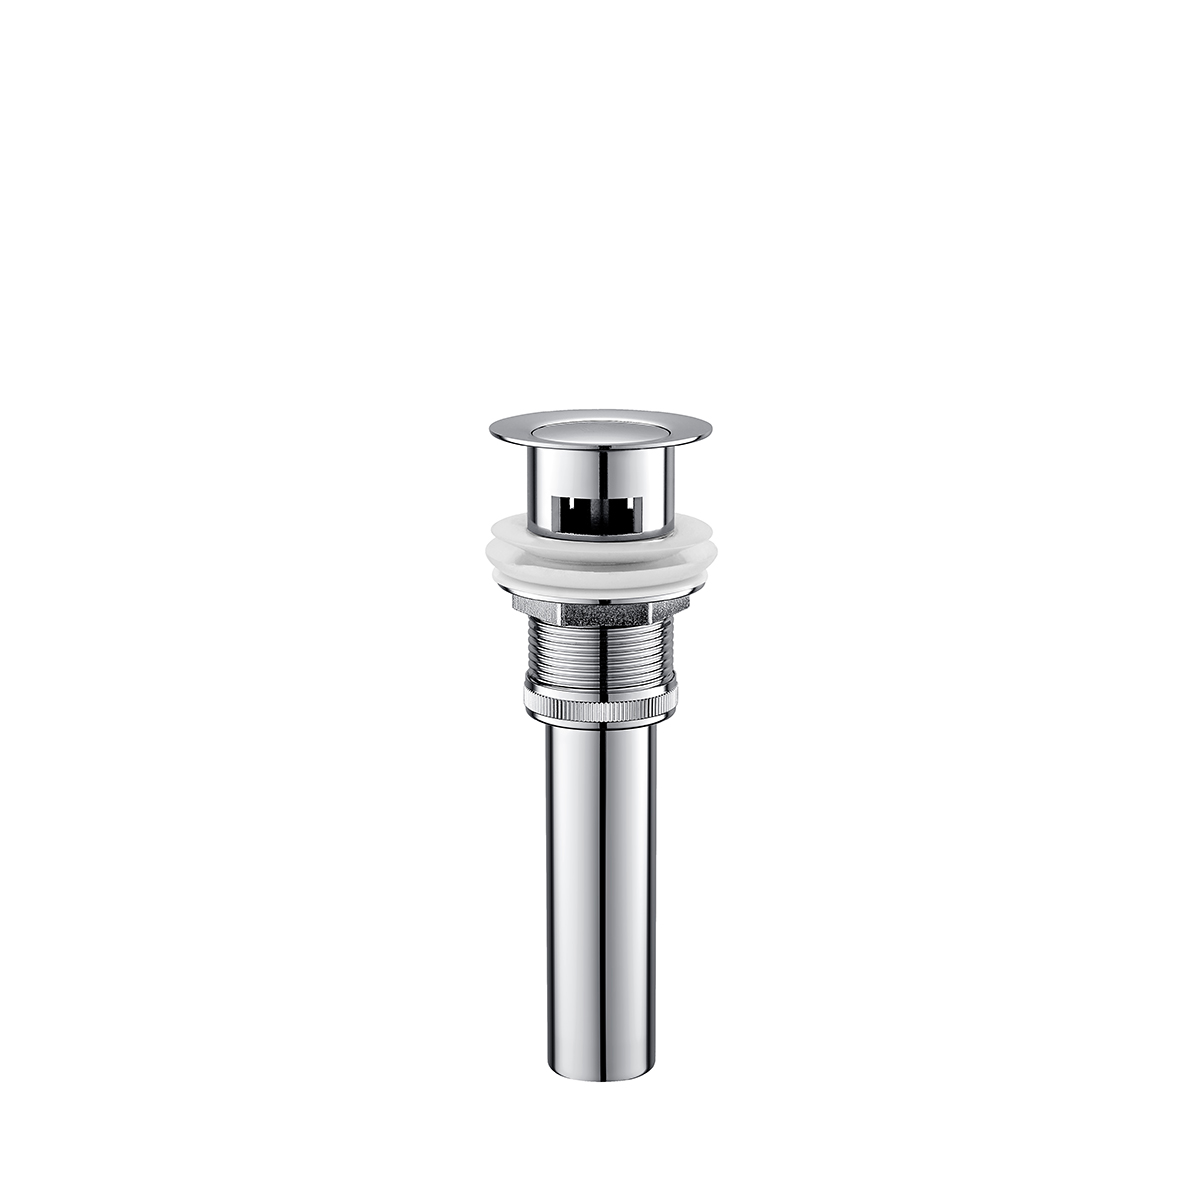 ທໍ່ລະບາຍນ້ໍາສໍາລັບຫ້ອງນ້ໍາທອງເຫລືອງຂະຫນາດນ້ອຍ round drainer ຫ້ອງນ້ໍາແລະເຮືອນຄົວ Sink drain 42mm ທອງເຫຼືອງ pop up ສິ່ງເສດເຫຼືອ